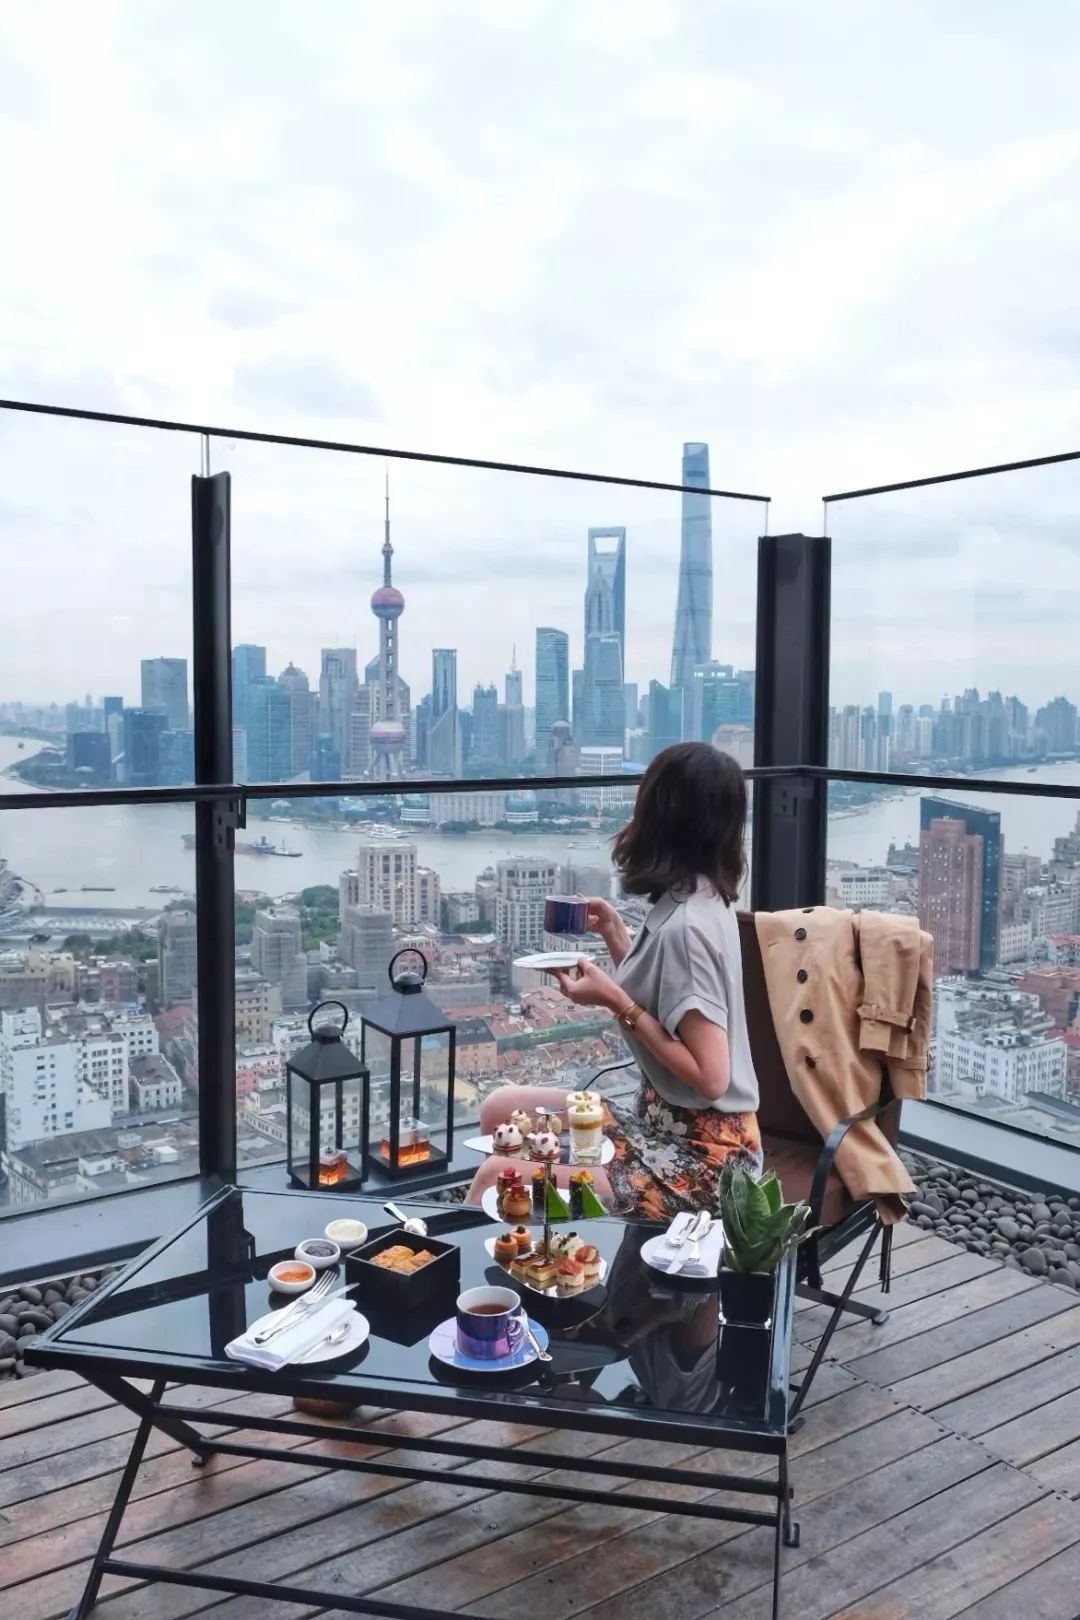 位于上海宝格丽酒店47楼的魔都下午茶新贵 露台景观无敌,不接受非